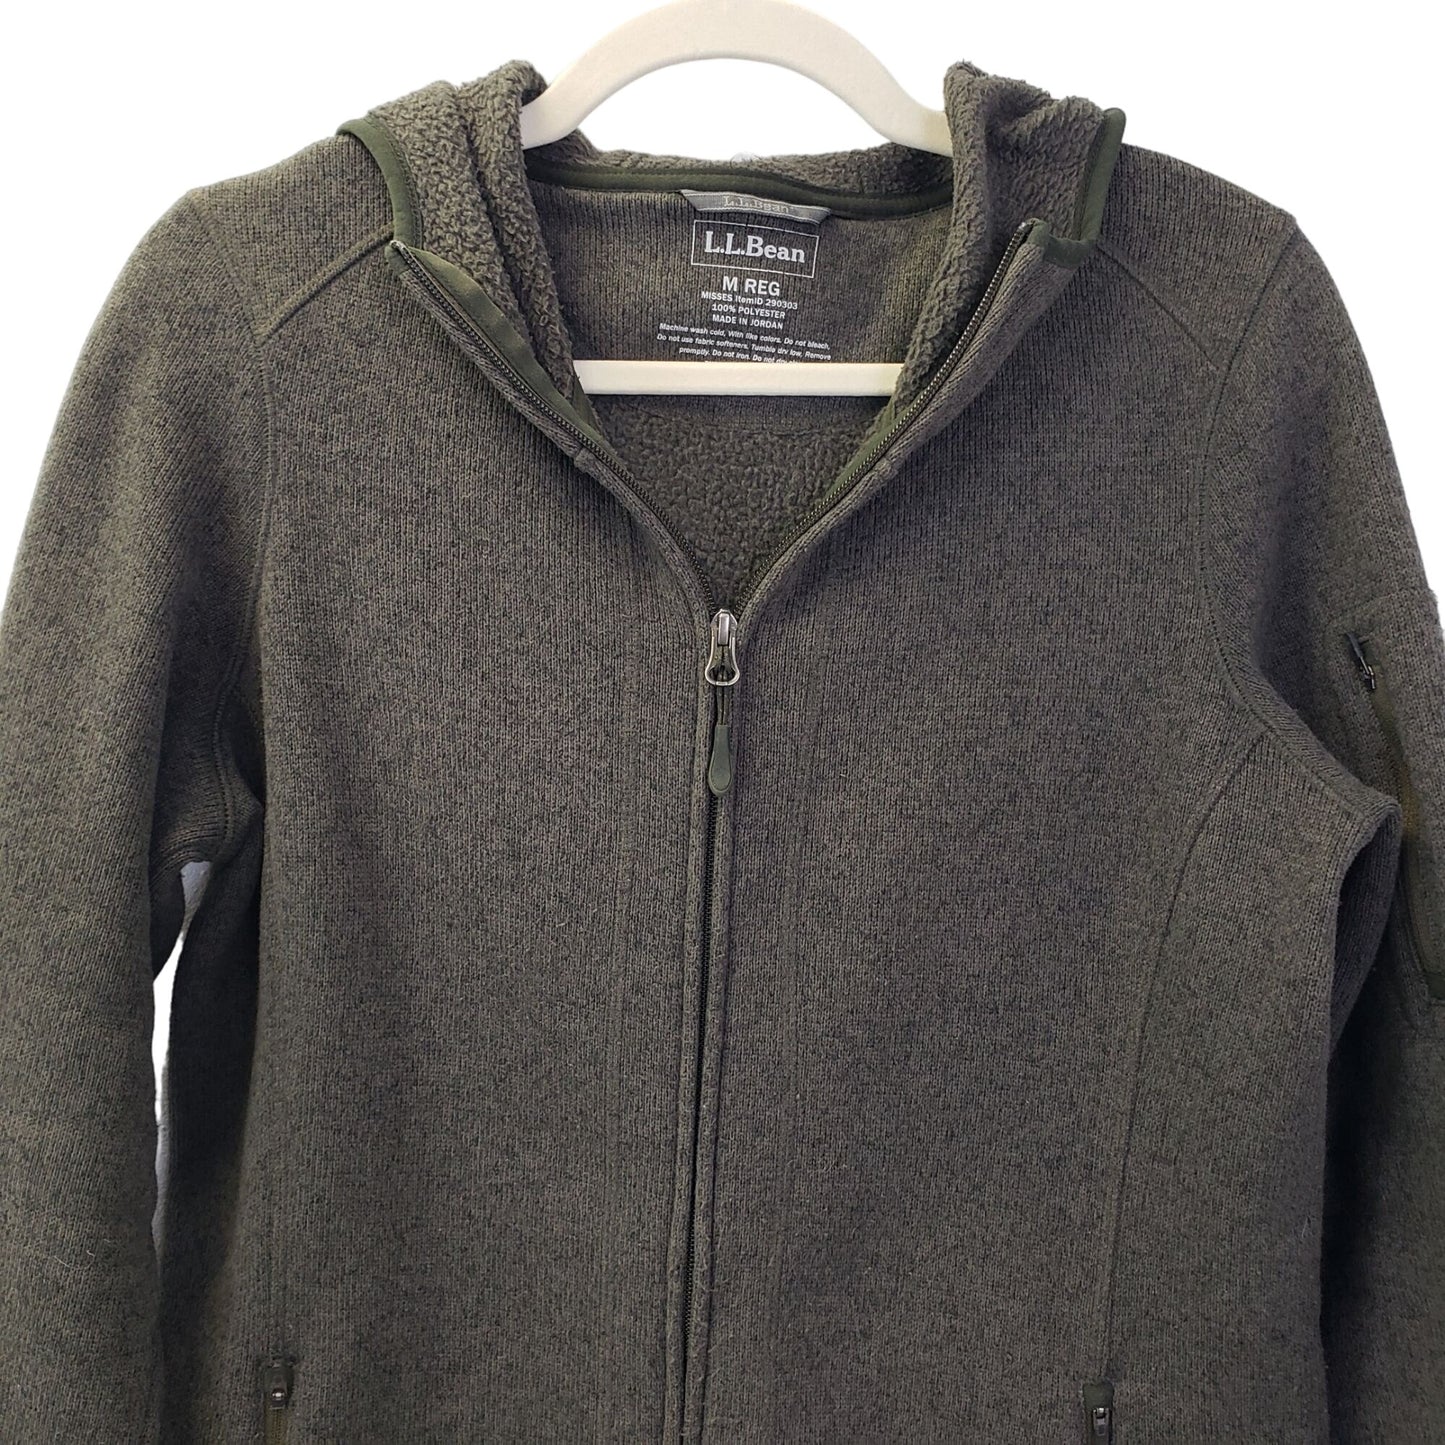 L.L. Bean Longline Fleece Lined Hooded Jacket Size Medium